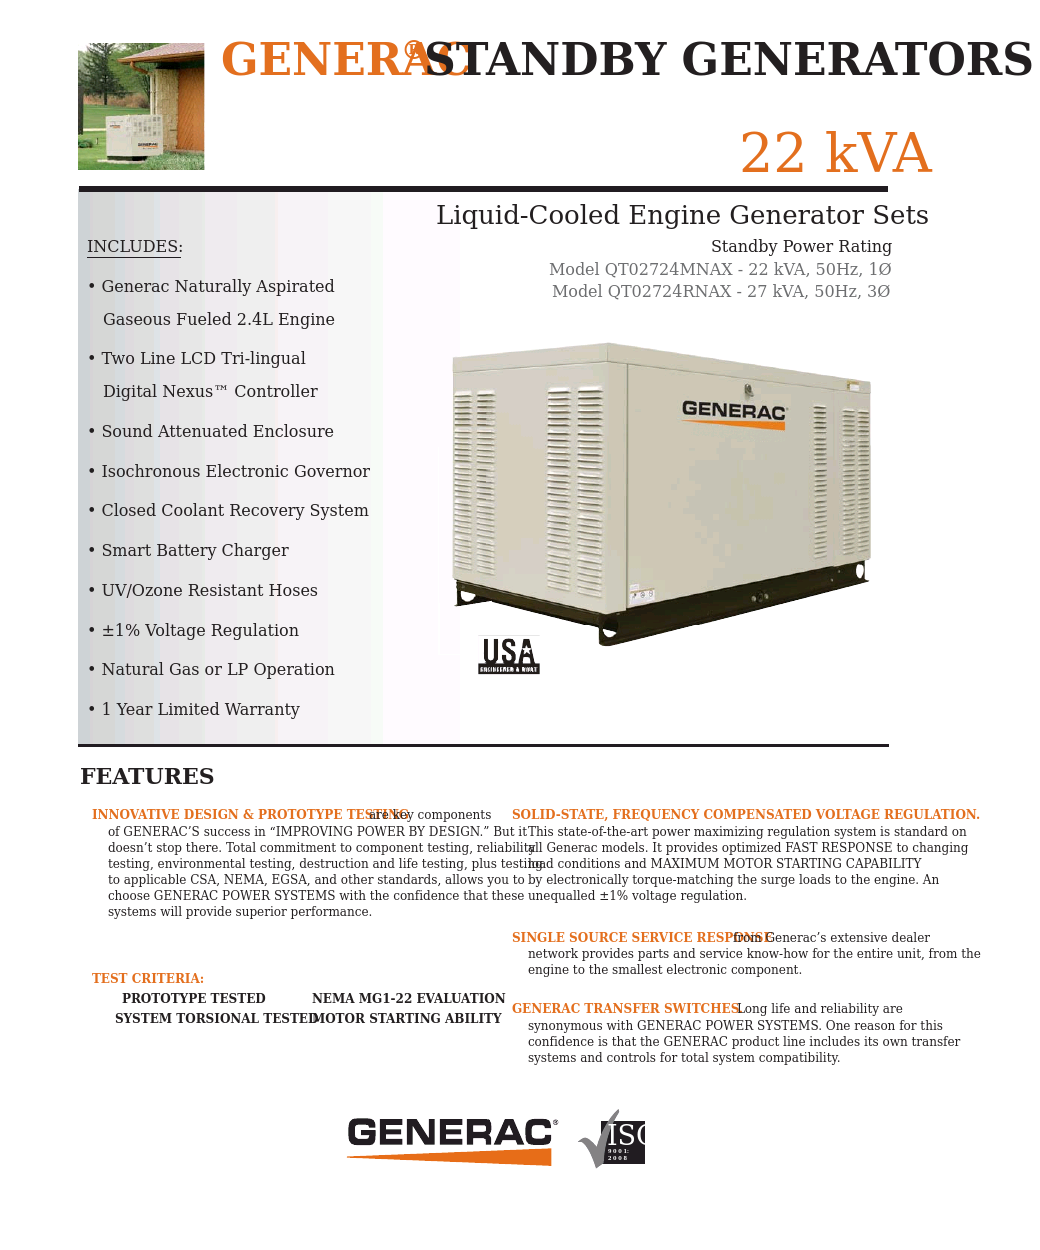 Liquid-Cooled Engine Generator Sets 50Hz- Model QT02724RNAX - 27 kVA